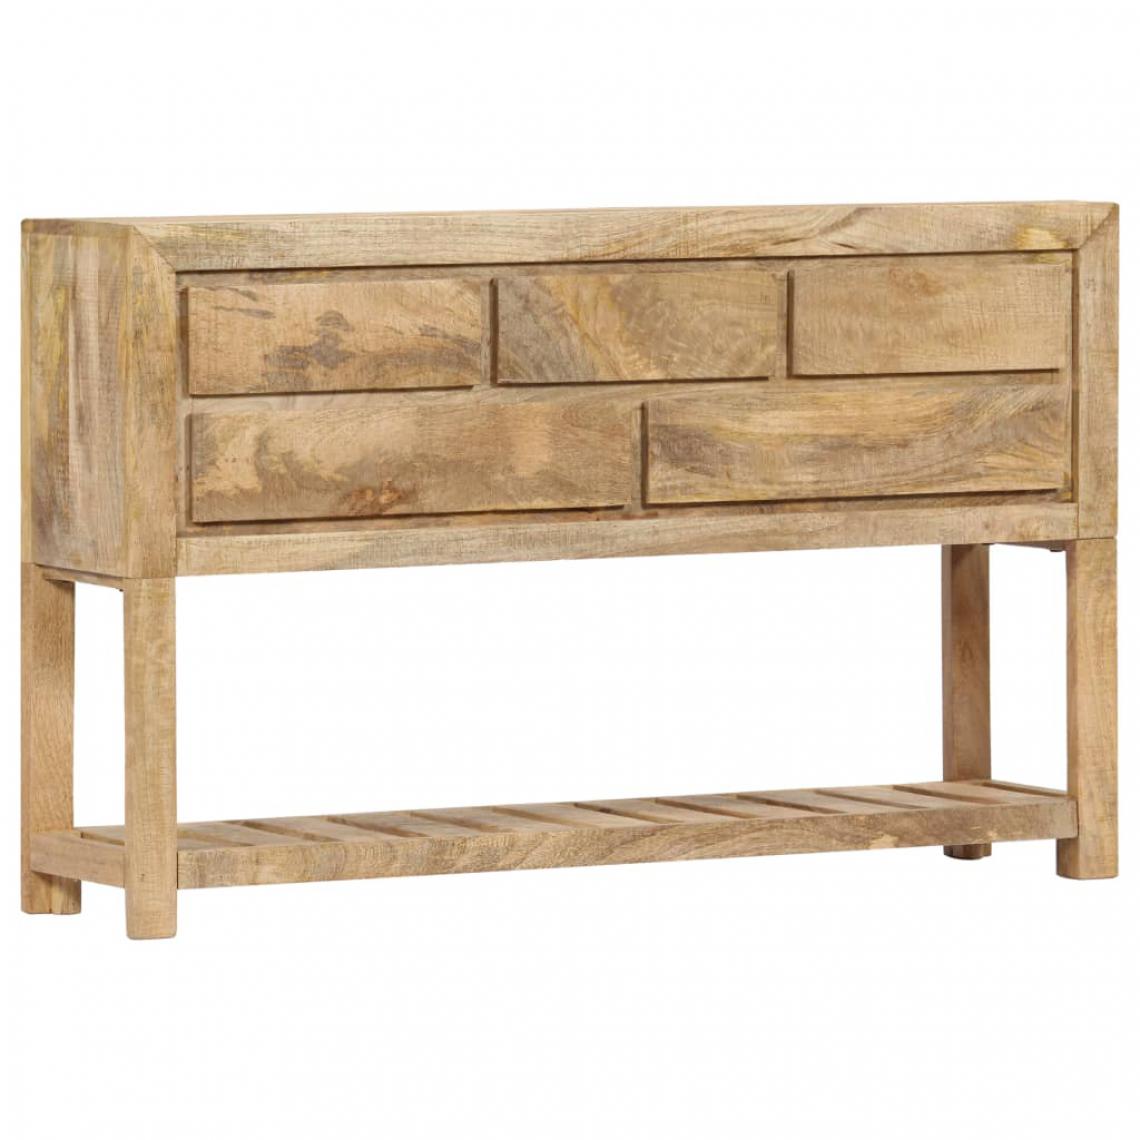 Helloshop26 - Buffet bahut armoire console meuble de rangement 120 cm bois de manguier massif 4402254 - Consoles